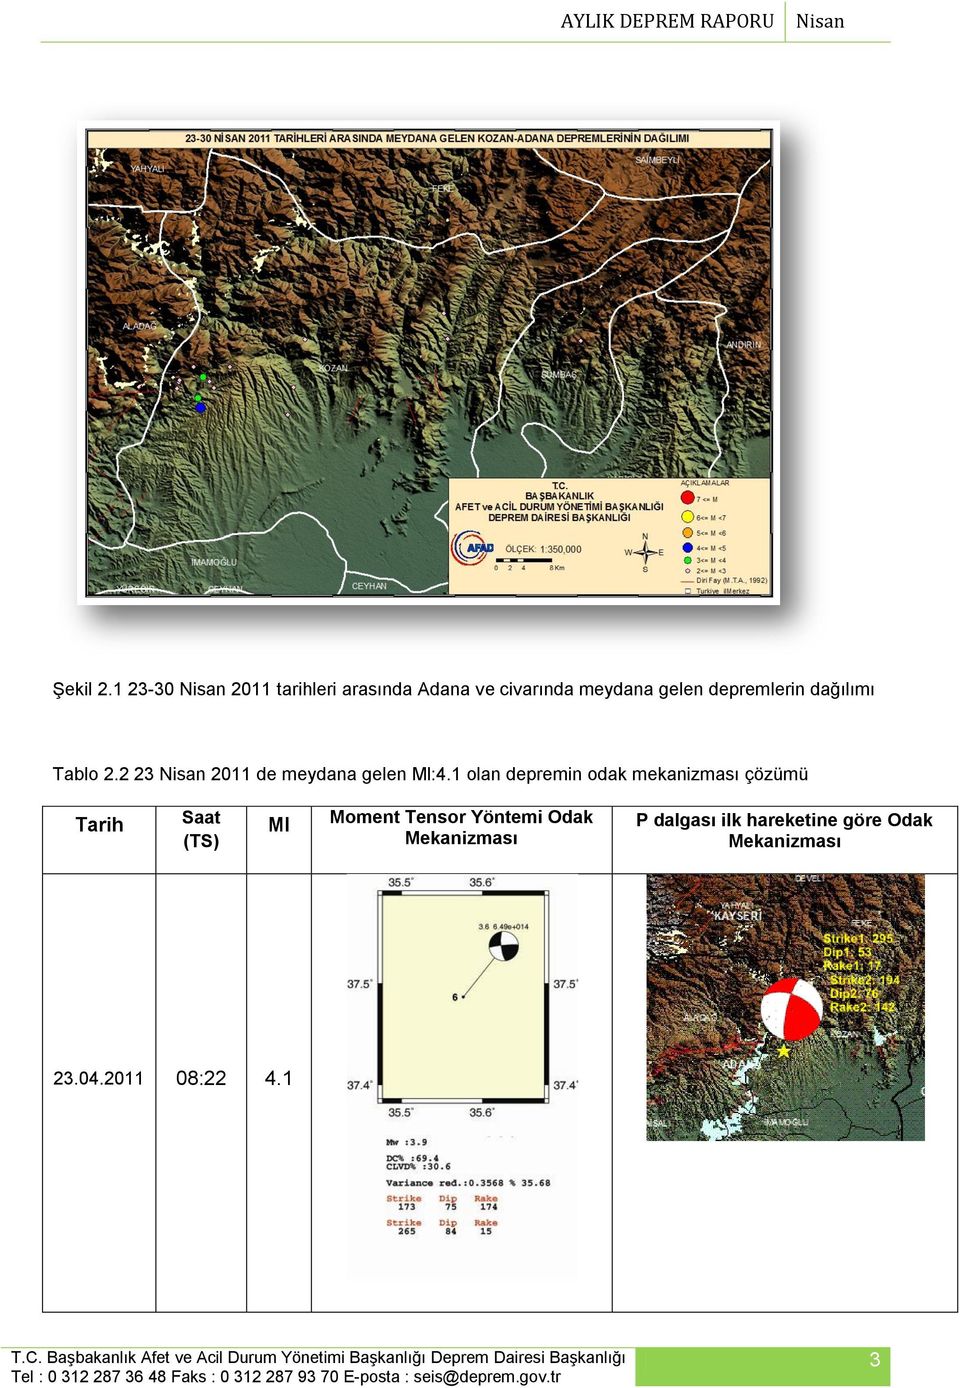 depremlerin dağılımı Tablo 2.2 23 Nisan 2011 de meydana gelen Ml:4.